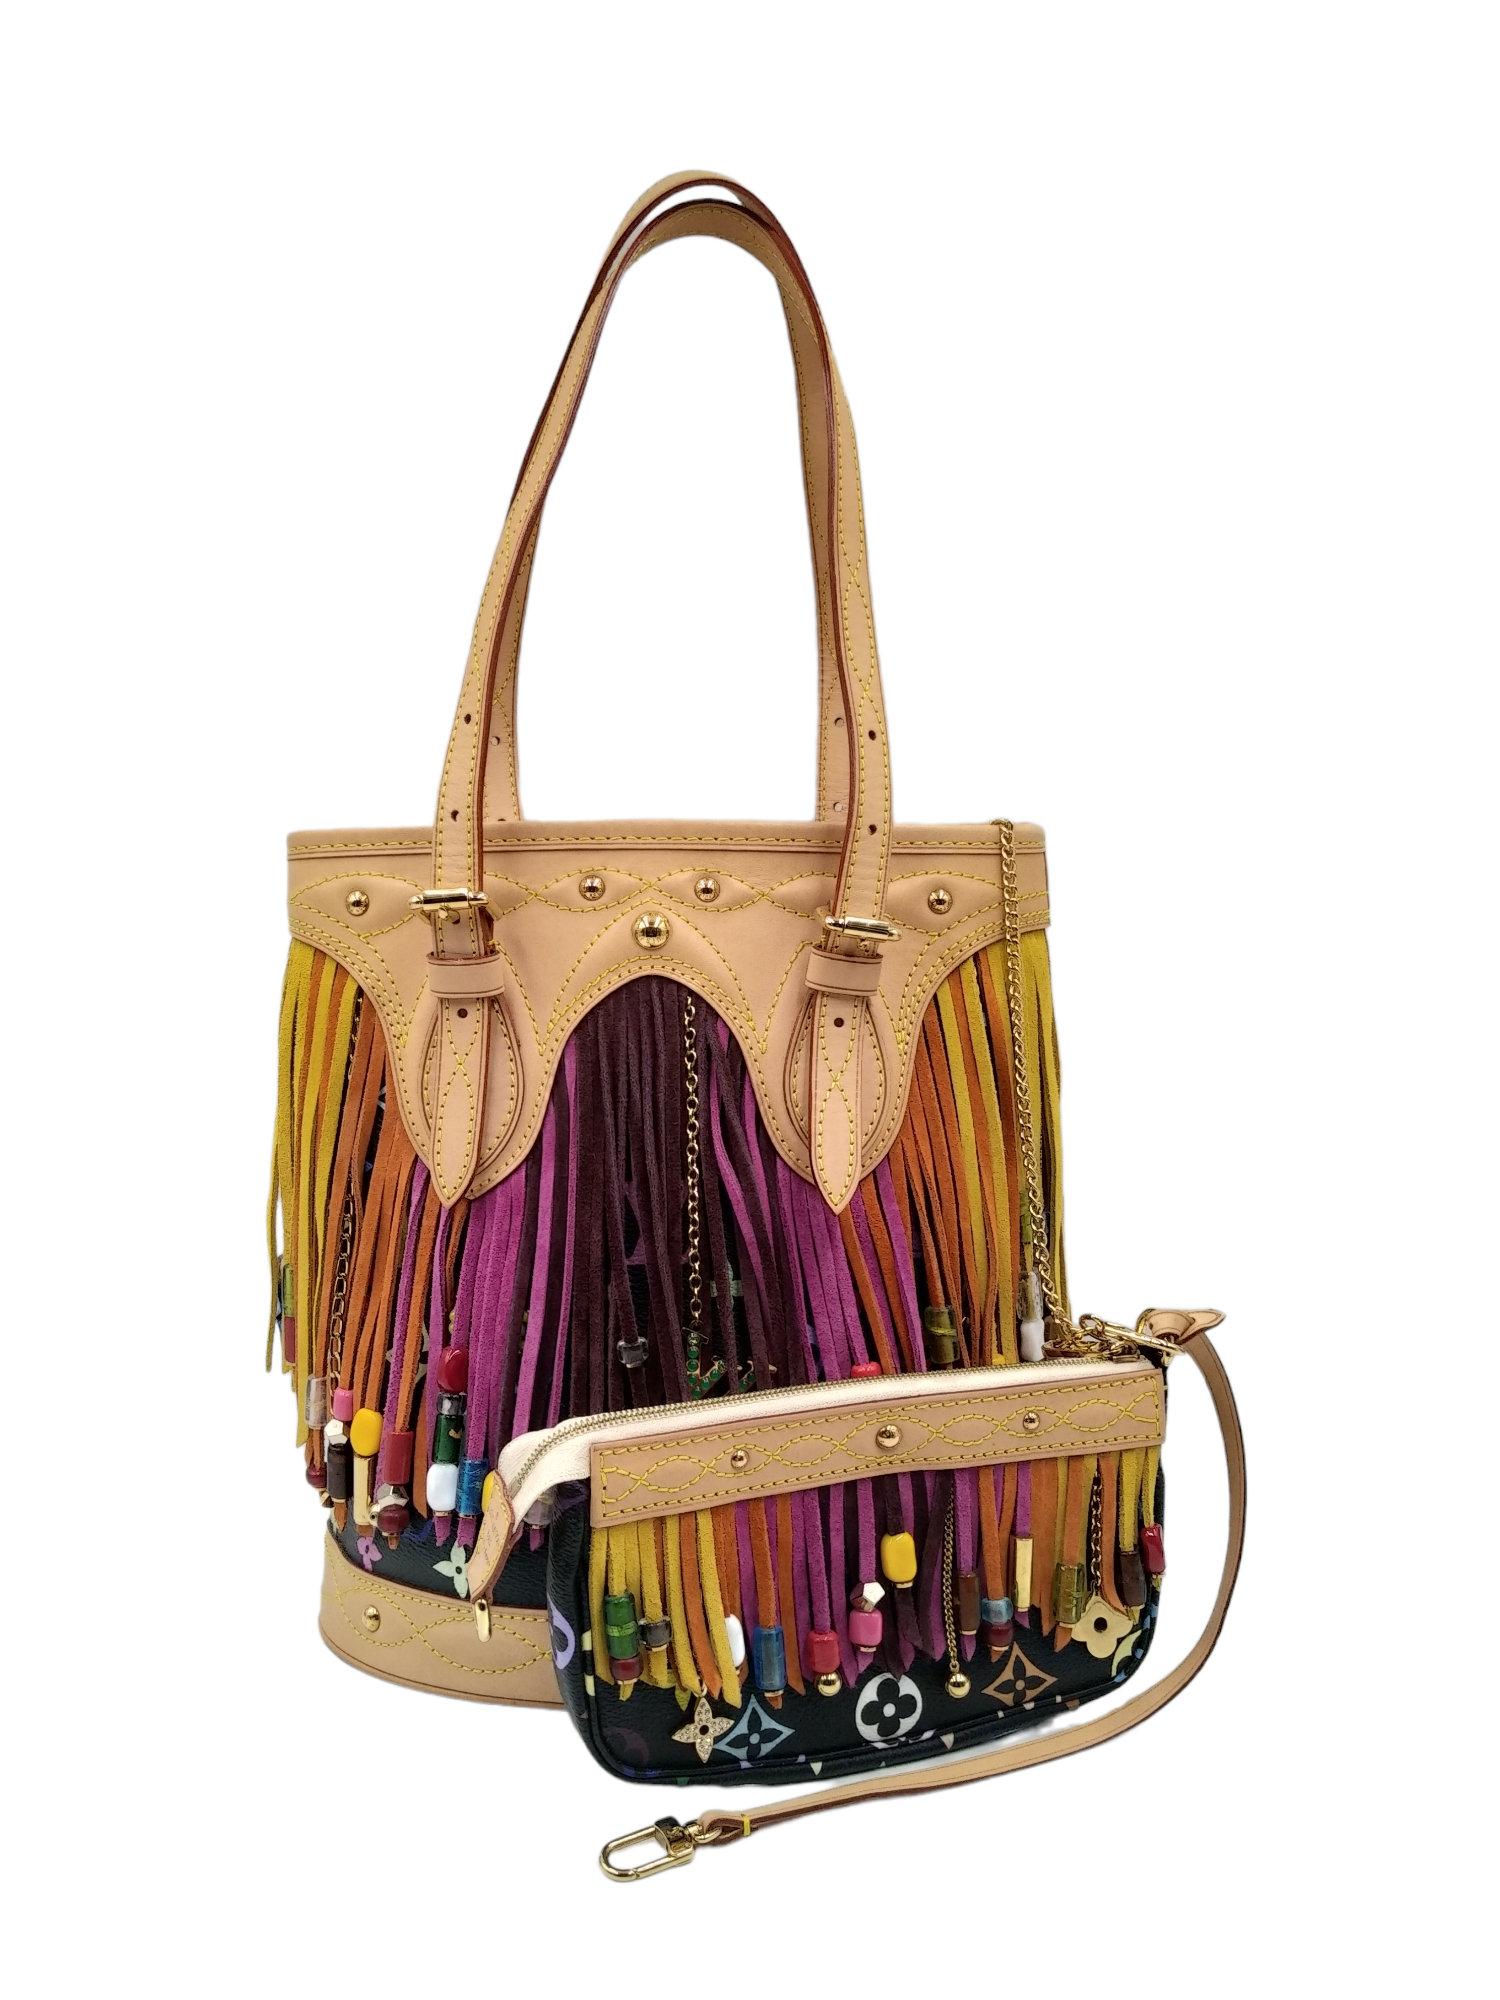 Louis Vuitton Fringe Bag - 6 For Sale on 1stDibs  fringe louis vuitton, western  louis vuitton fringe bag, lv fringe purse